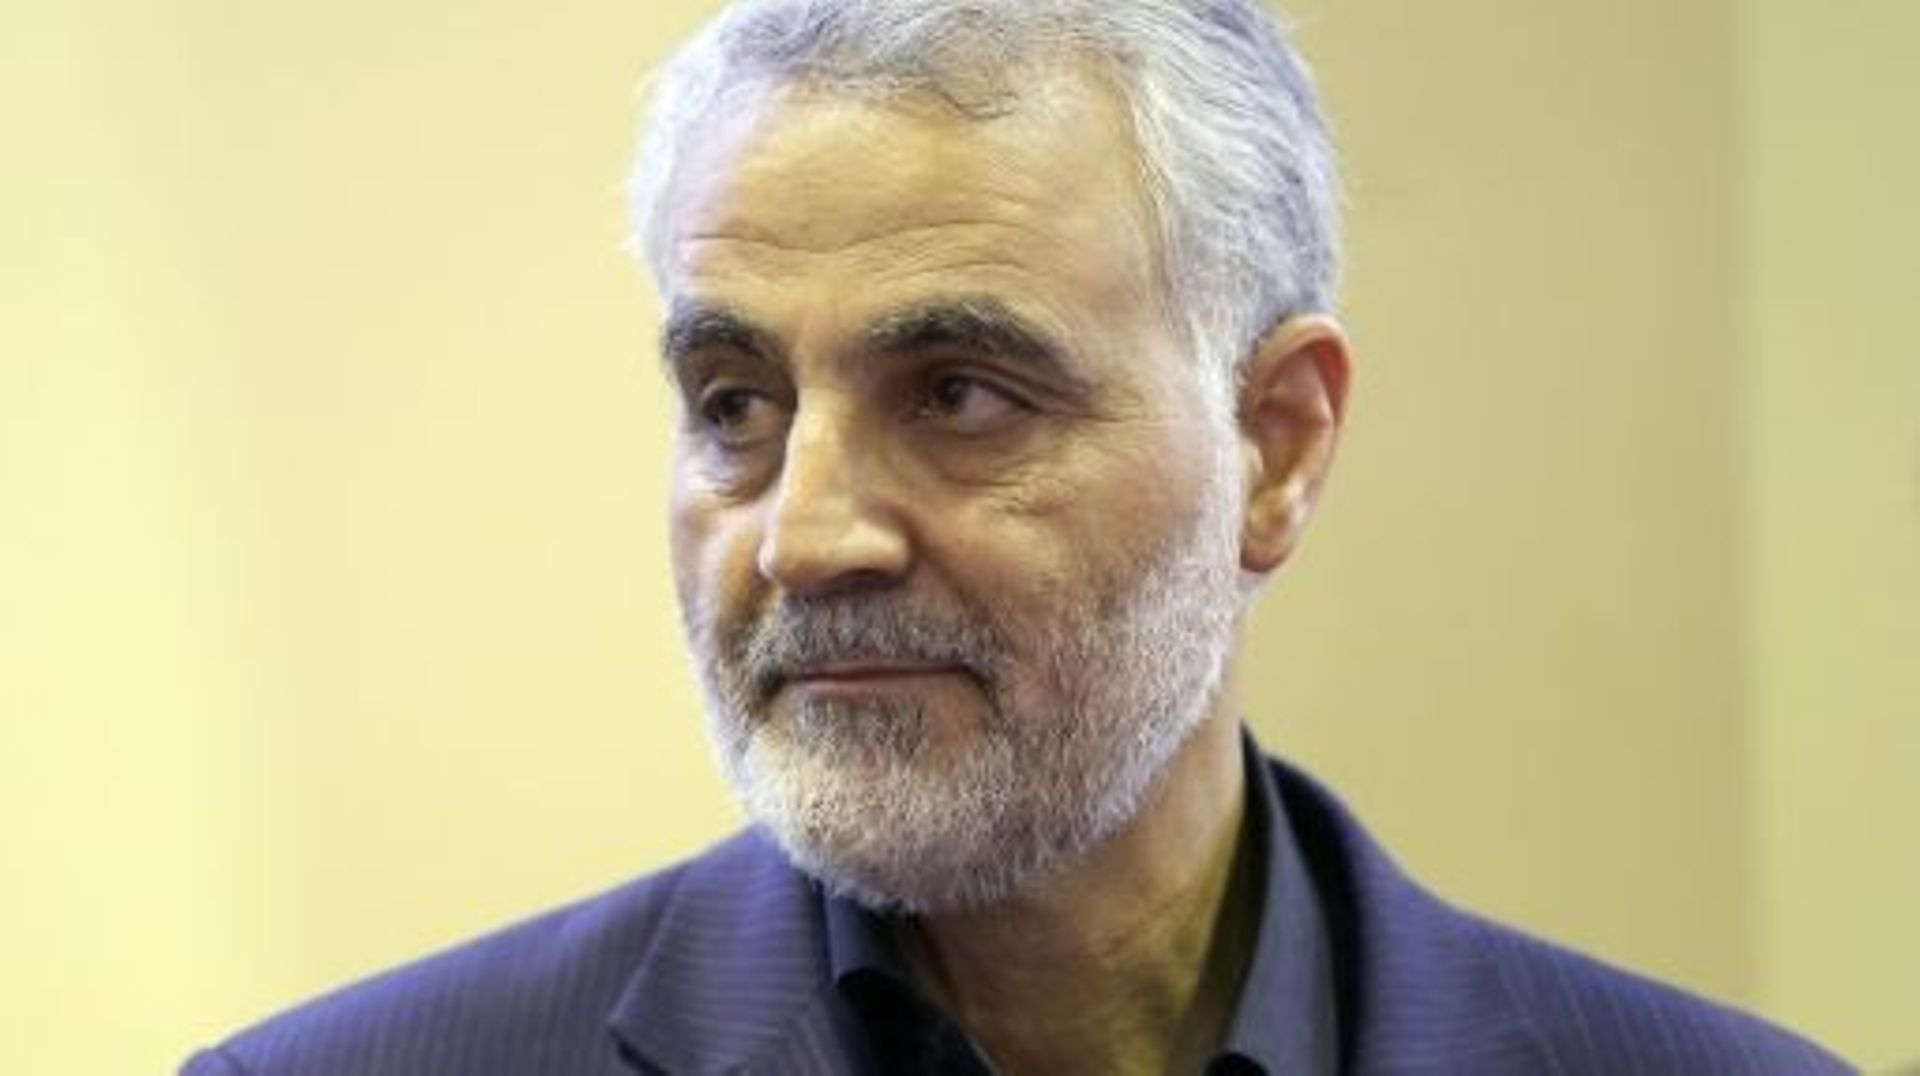 syrie-le-general-iranien-souleimani-grievement-blesse-selon-l-opposition-iranienne-en-exil